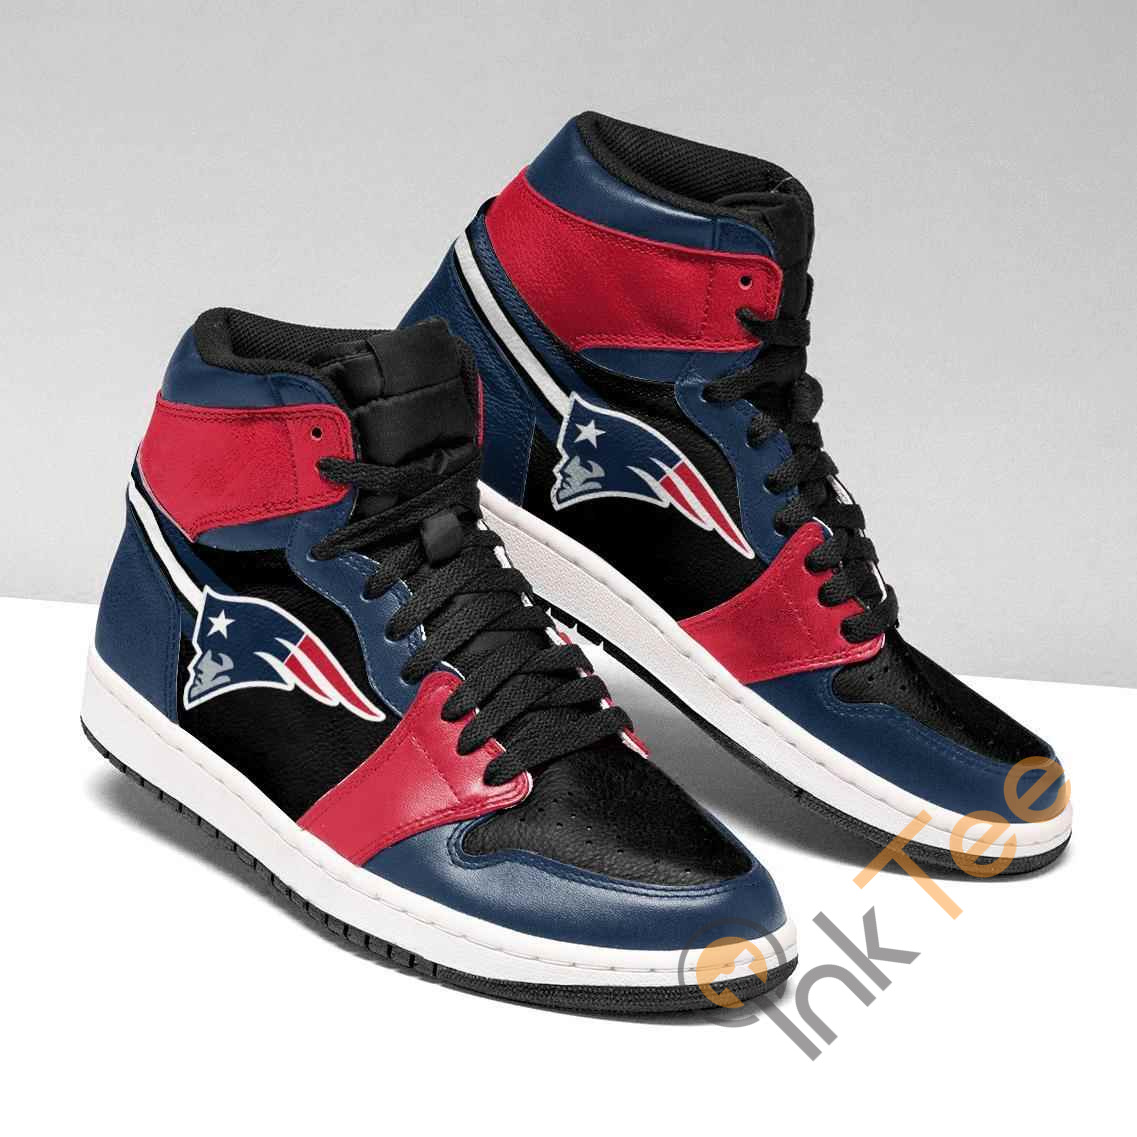 New England Patriots Nfl Air Jordan Shoes